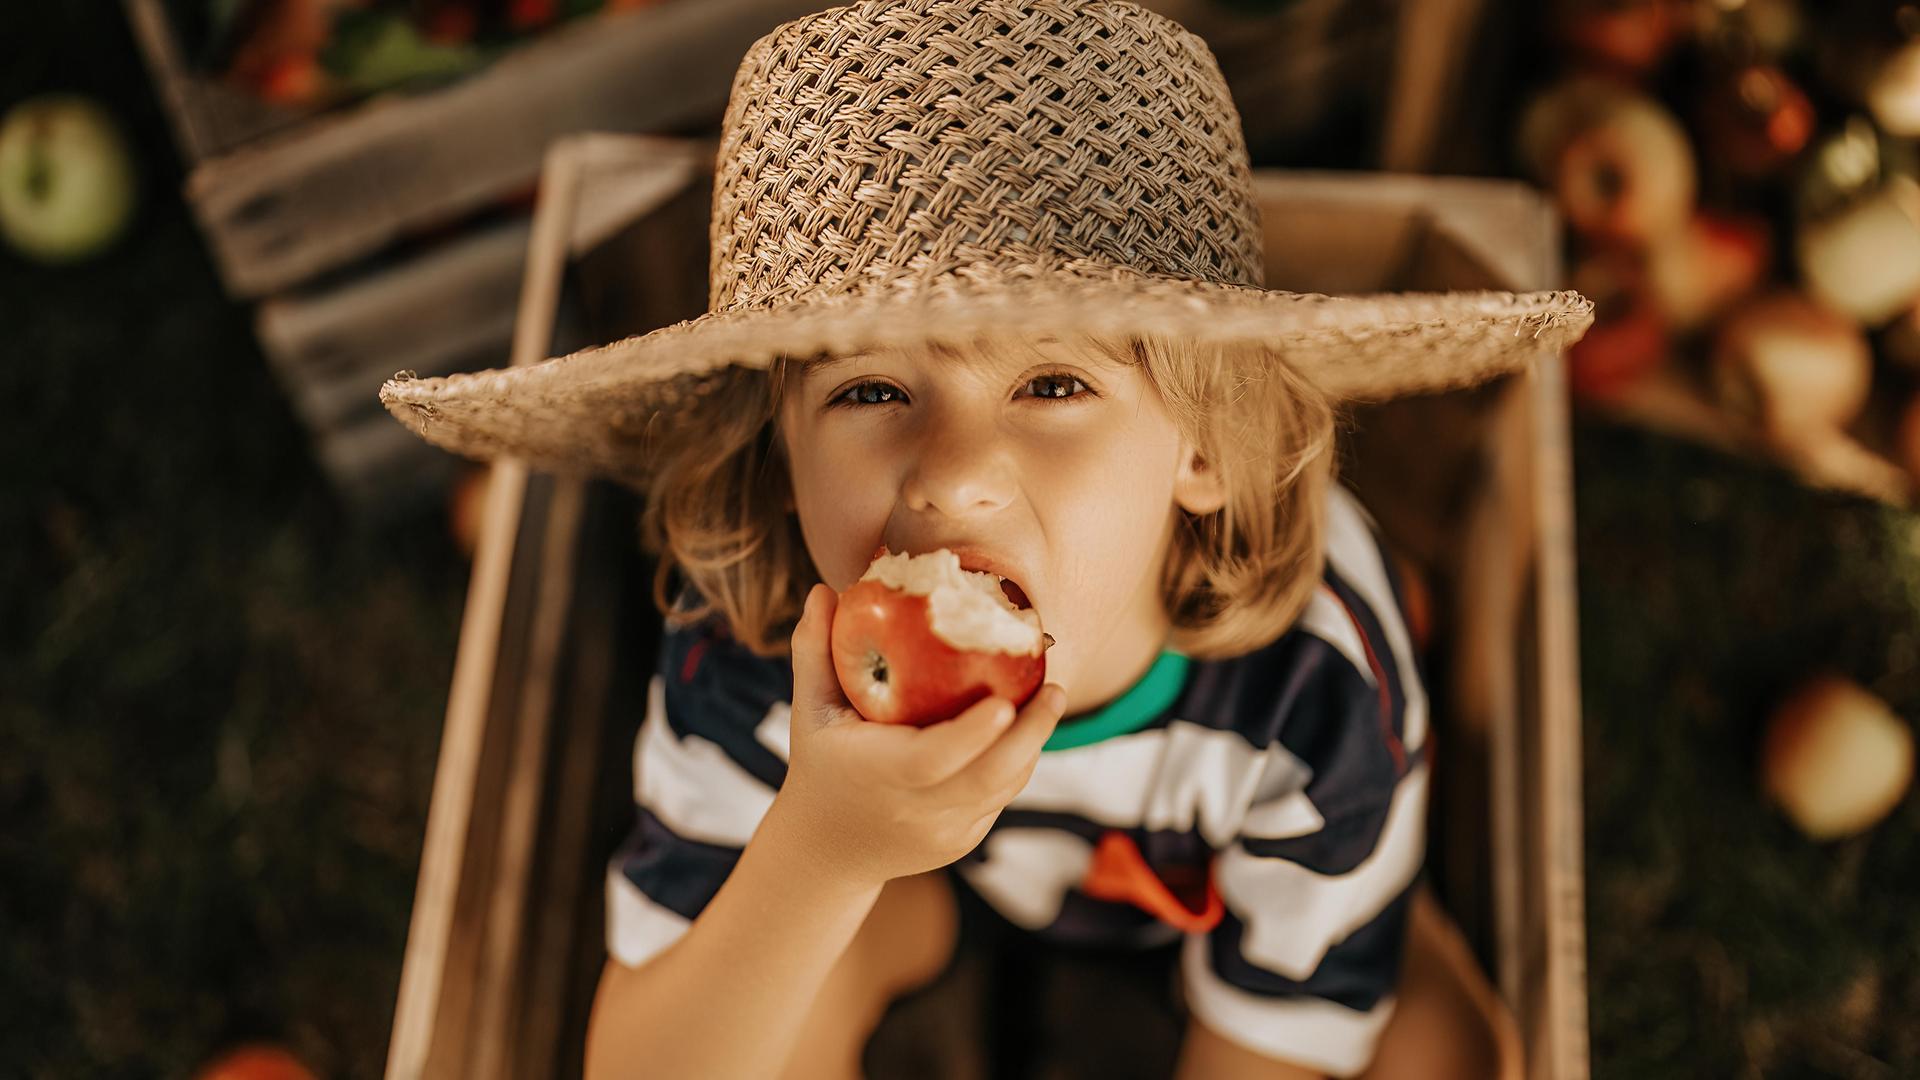 Ein Junge mit einem Strohhut sitzt in einer Holzkiste und isst einen Apfel.

